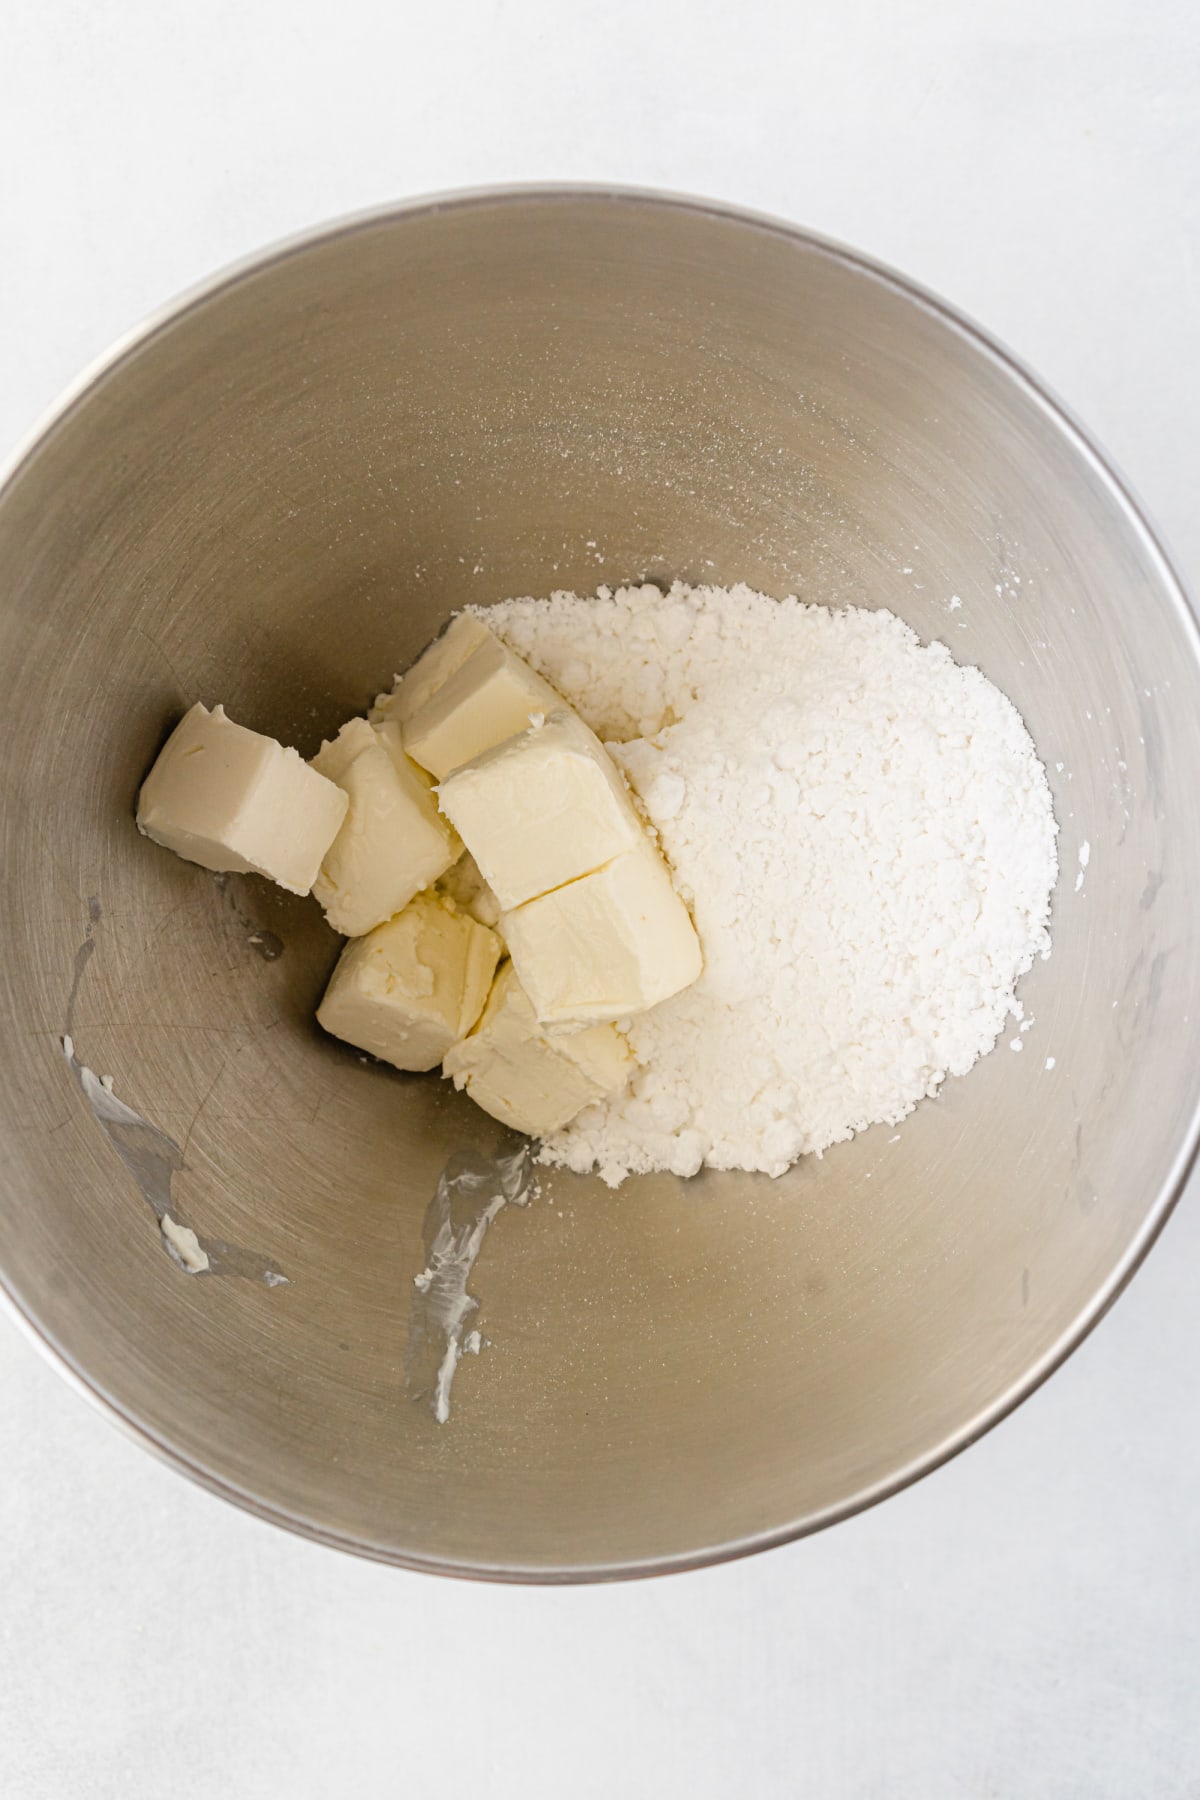 Powdered sugar and cream cheese